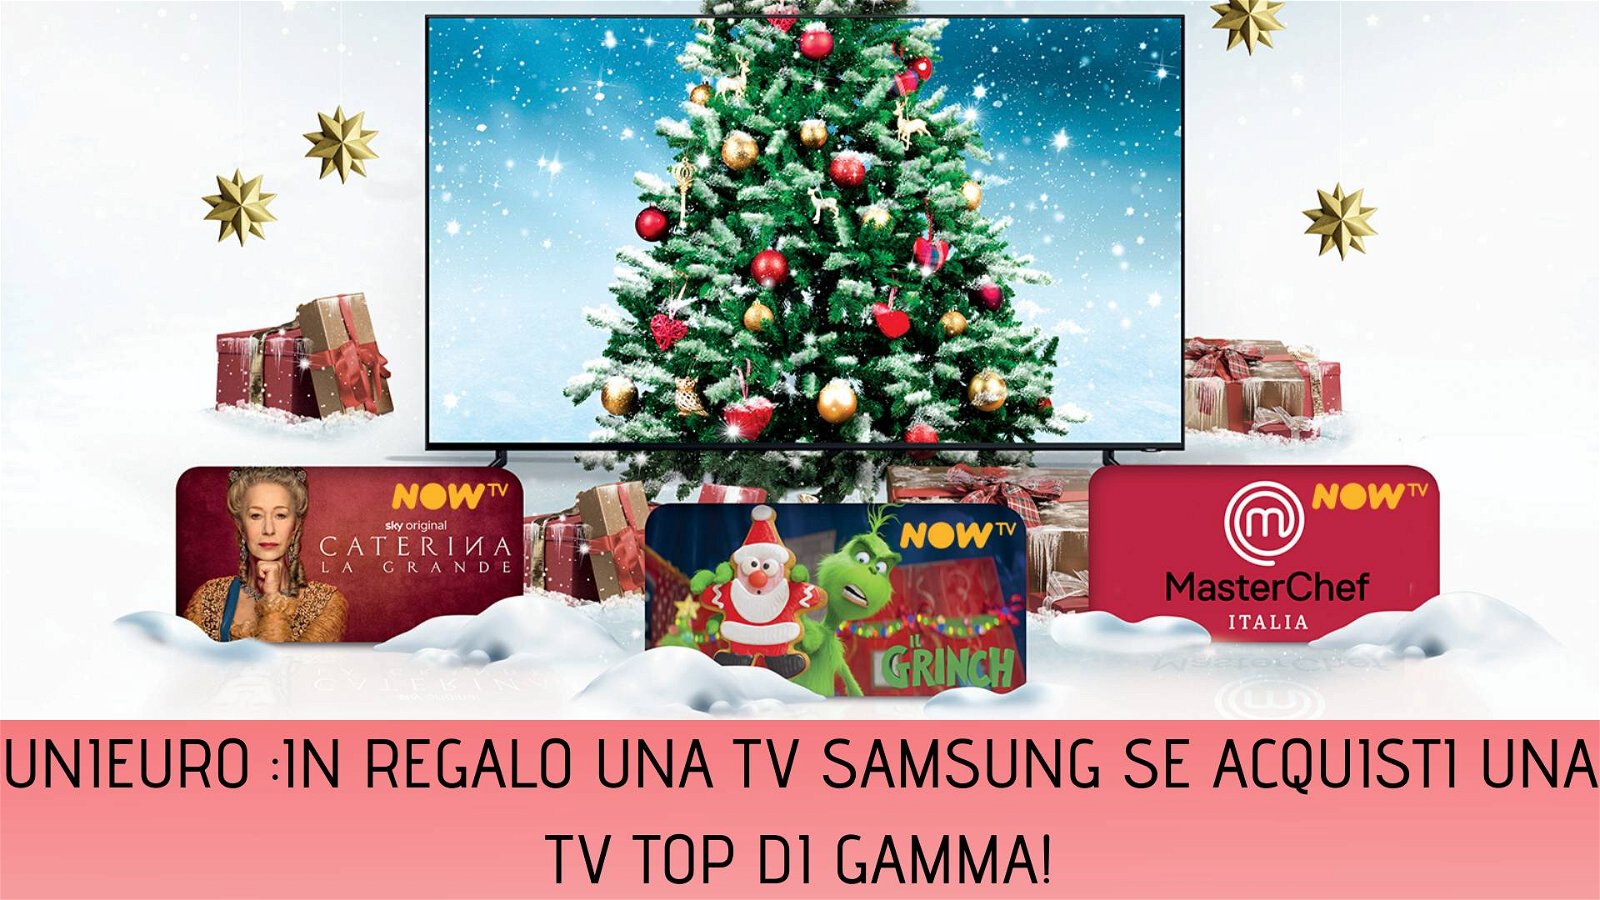 Immagine di Samsung a Natale raddoppia: acquista un TV top di gamma ricevi in regalo un altro TV e 12 mesi di NowTV